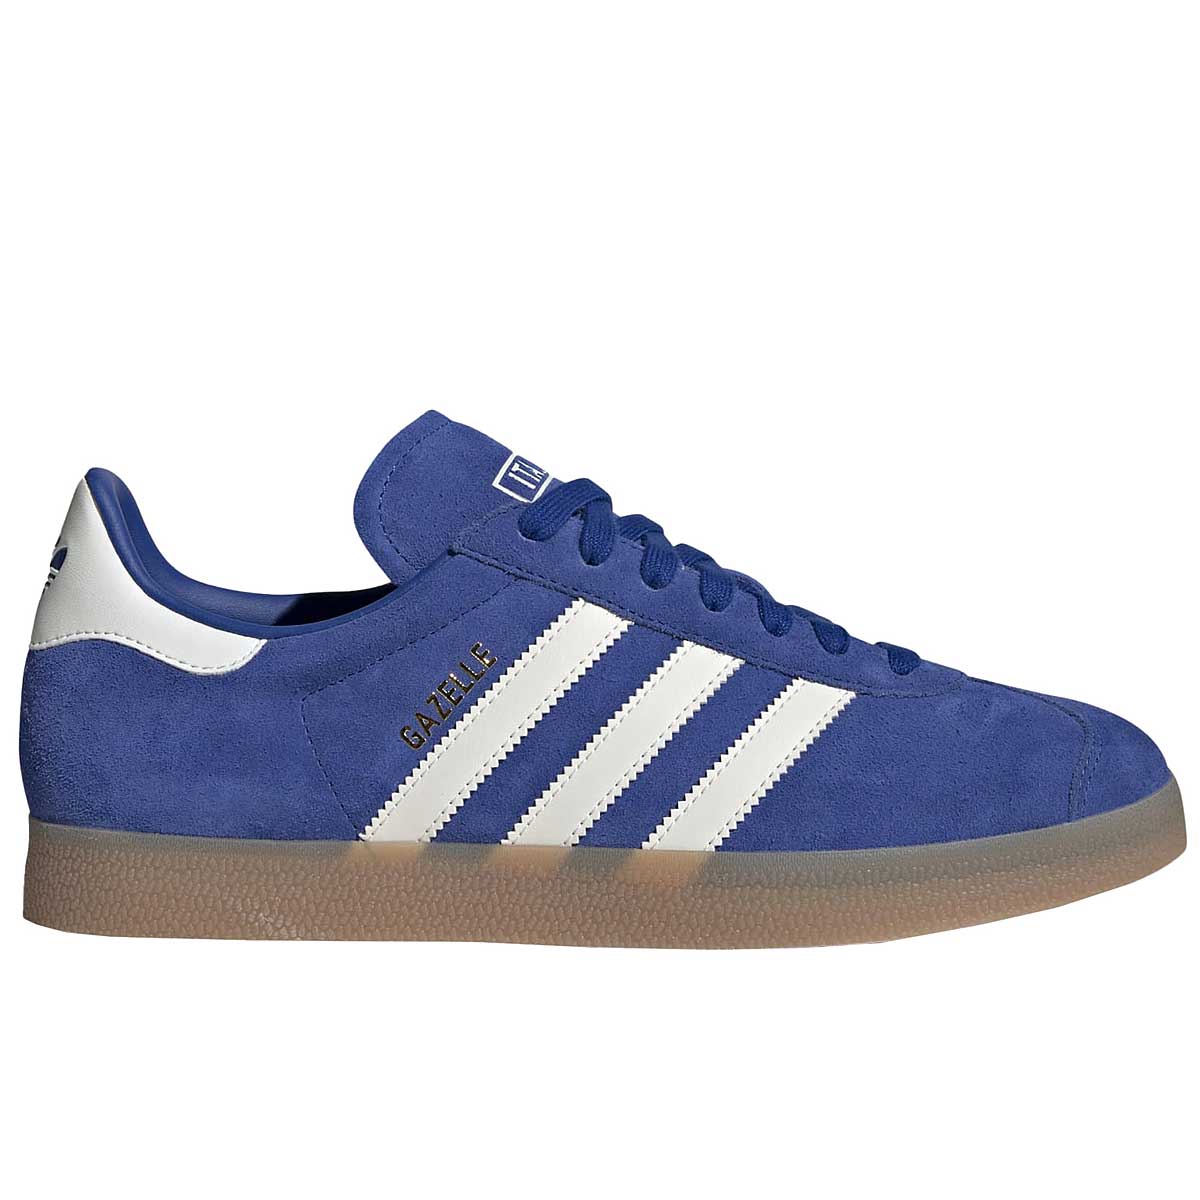 Adidas Originals Gazelle, Blue/white/orange EU43 1/3